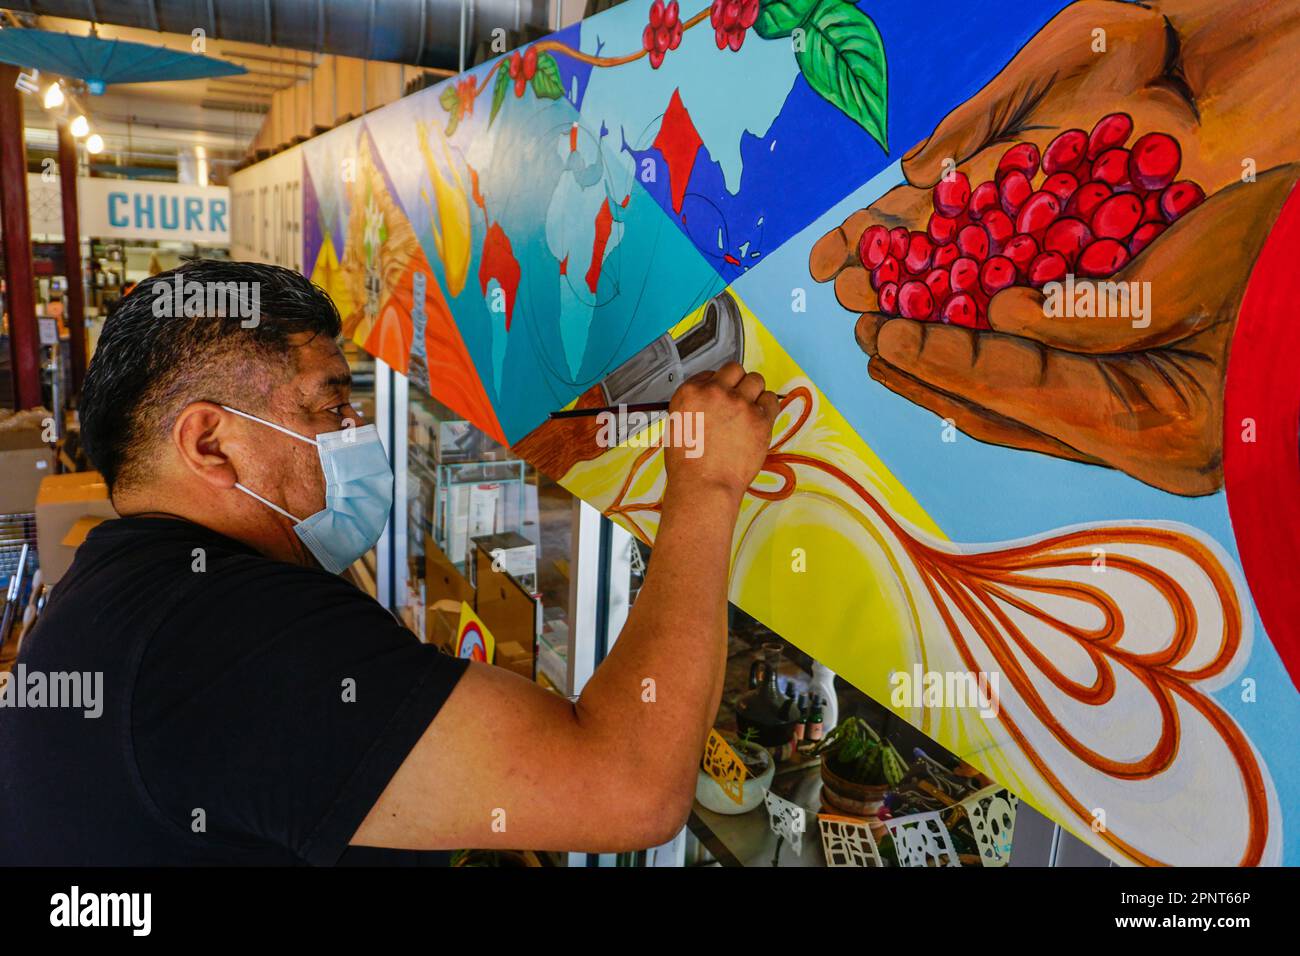 Cornelio Campos, der mit 18 aus Mexiko eingewandert ist, malt am 23. Oktober 2021 in Durham, North Carolina, USA, ein Wandgemälde in einem Café und churrería. Seine Bilder vermitteln, wie es ist, ein Migrant zu sein. Campos teilt gerne mit, wo er herkommt, und möchte jungen Menschen helfen, ihre Wurzeln zu erkennen. (Ena Aguilar Peláez/Global Press Journal) Stockfoto